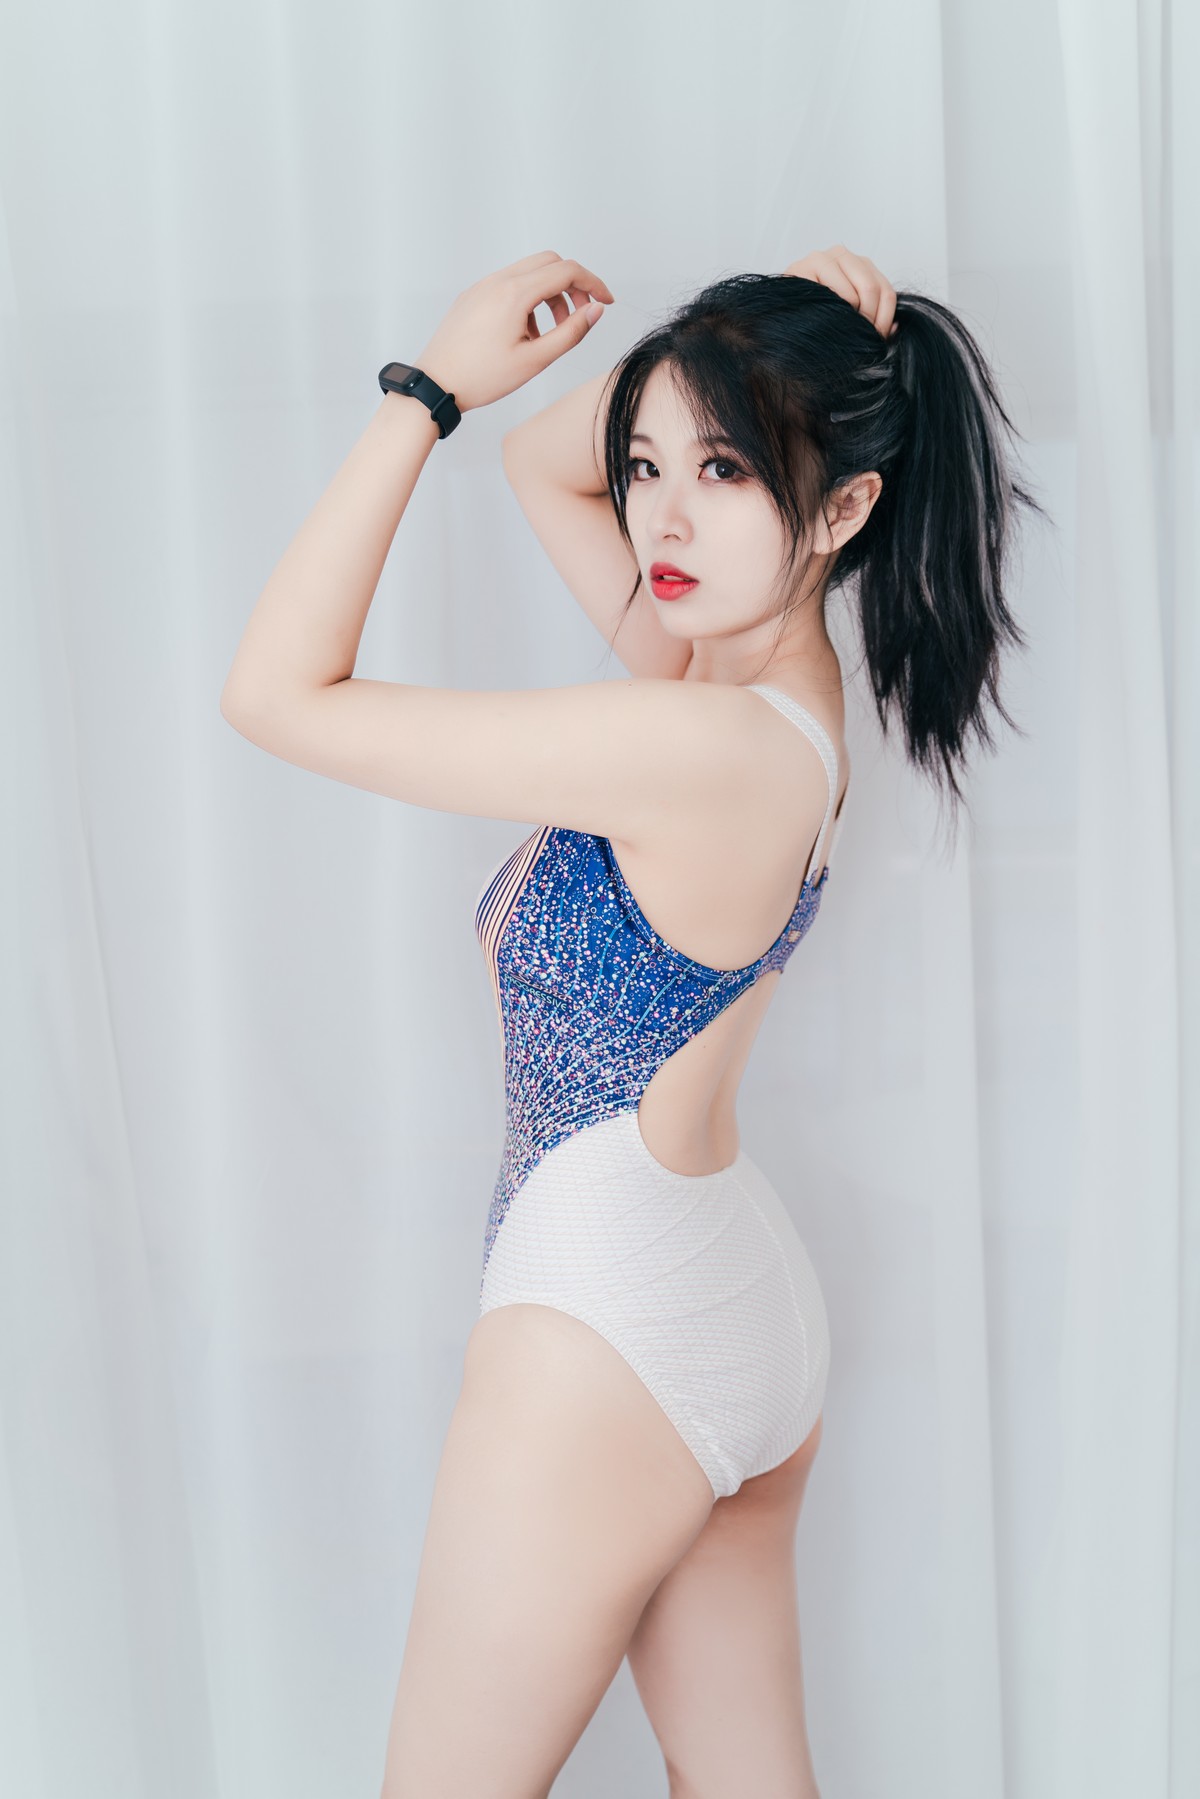 网络美女轩萧学姐连体泳装秀完美身材竞泳主题私房写真